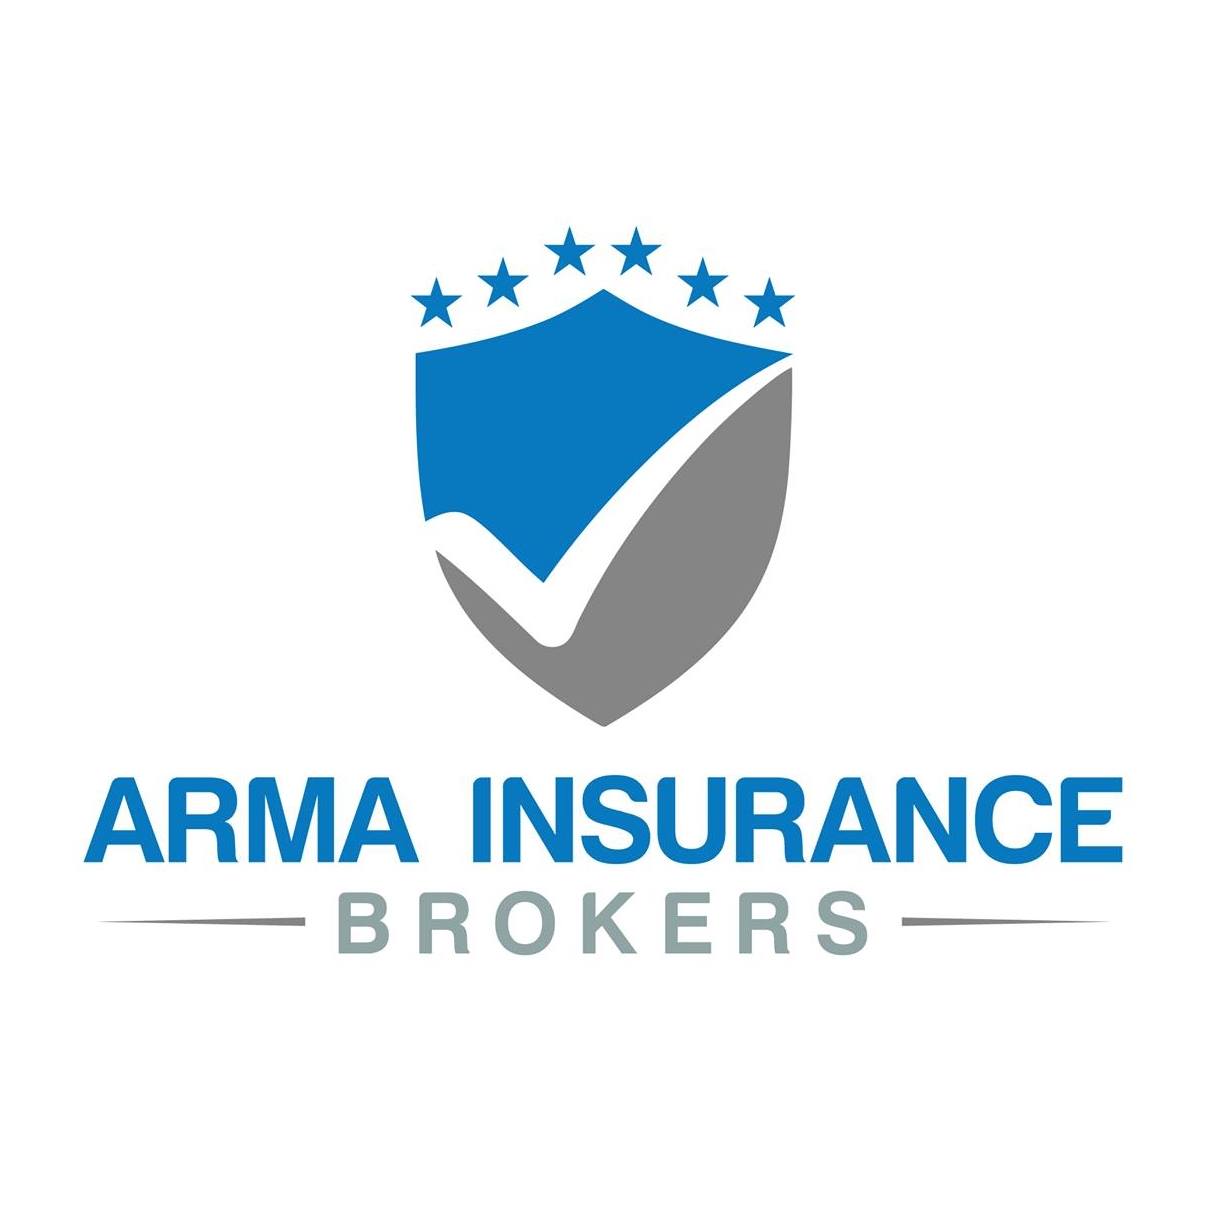 Company logo of ARMA Insurance Brokers